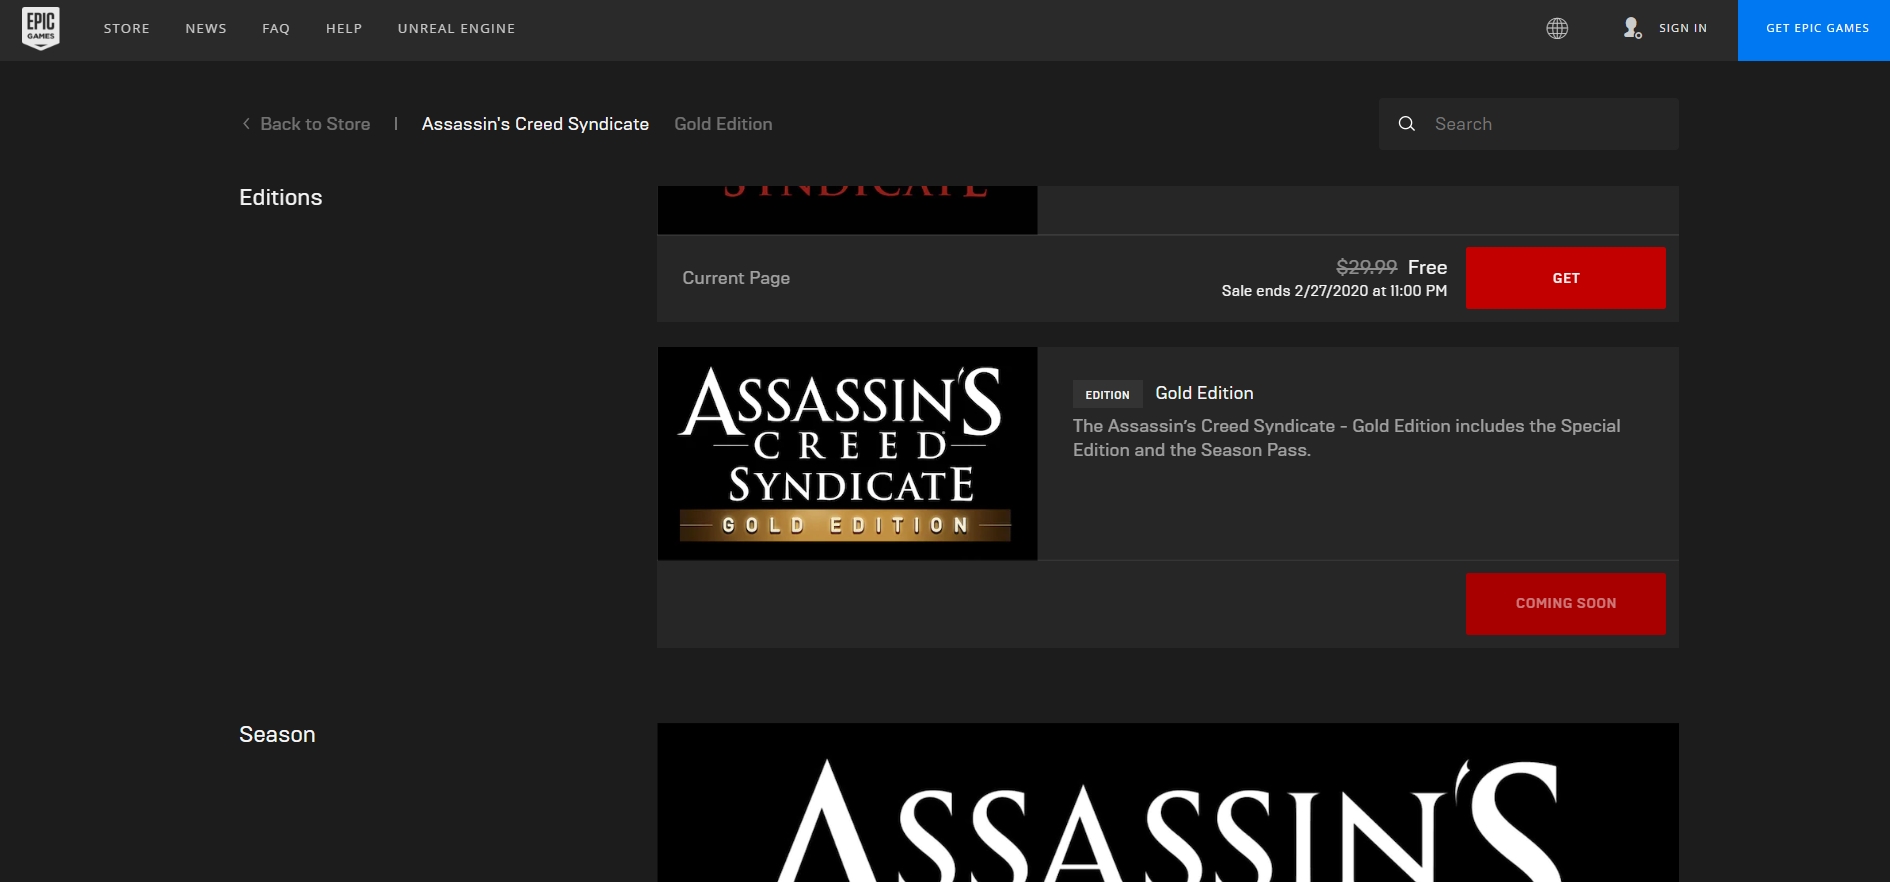 Nhanh tay lấy game Assassin's Creed Syndicate hiện đang được Epic Games tặng miễn phí